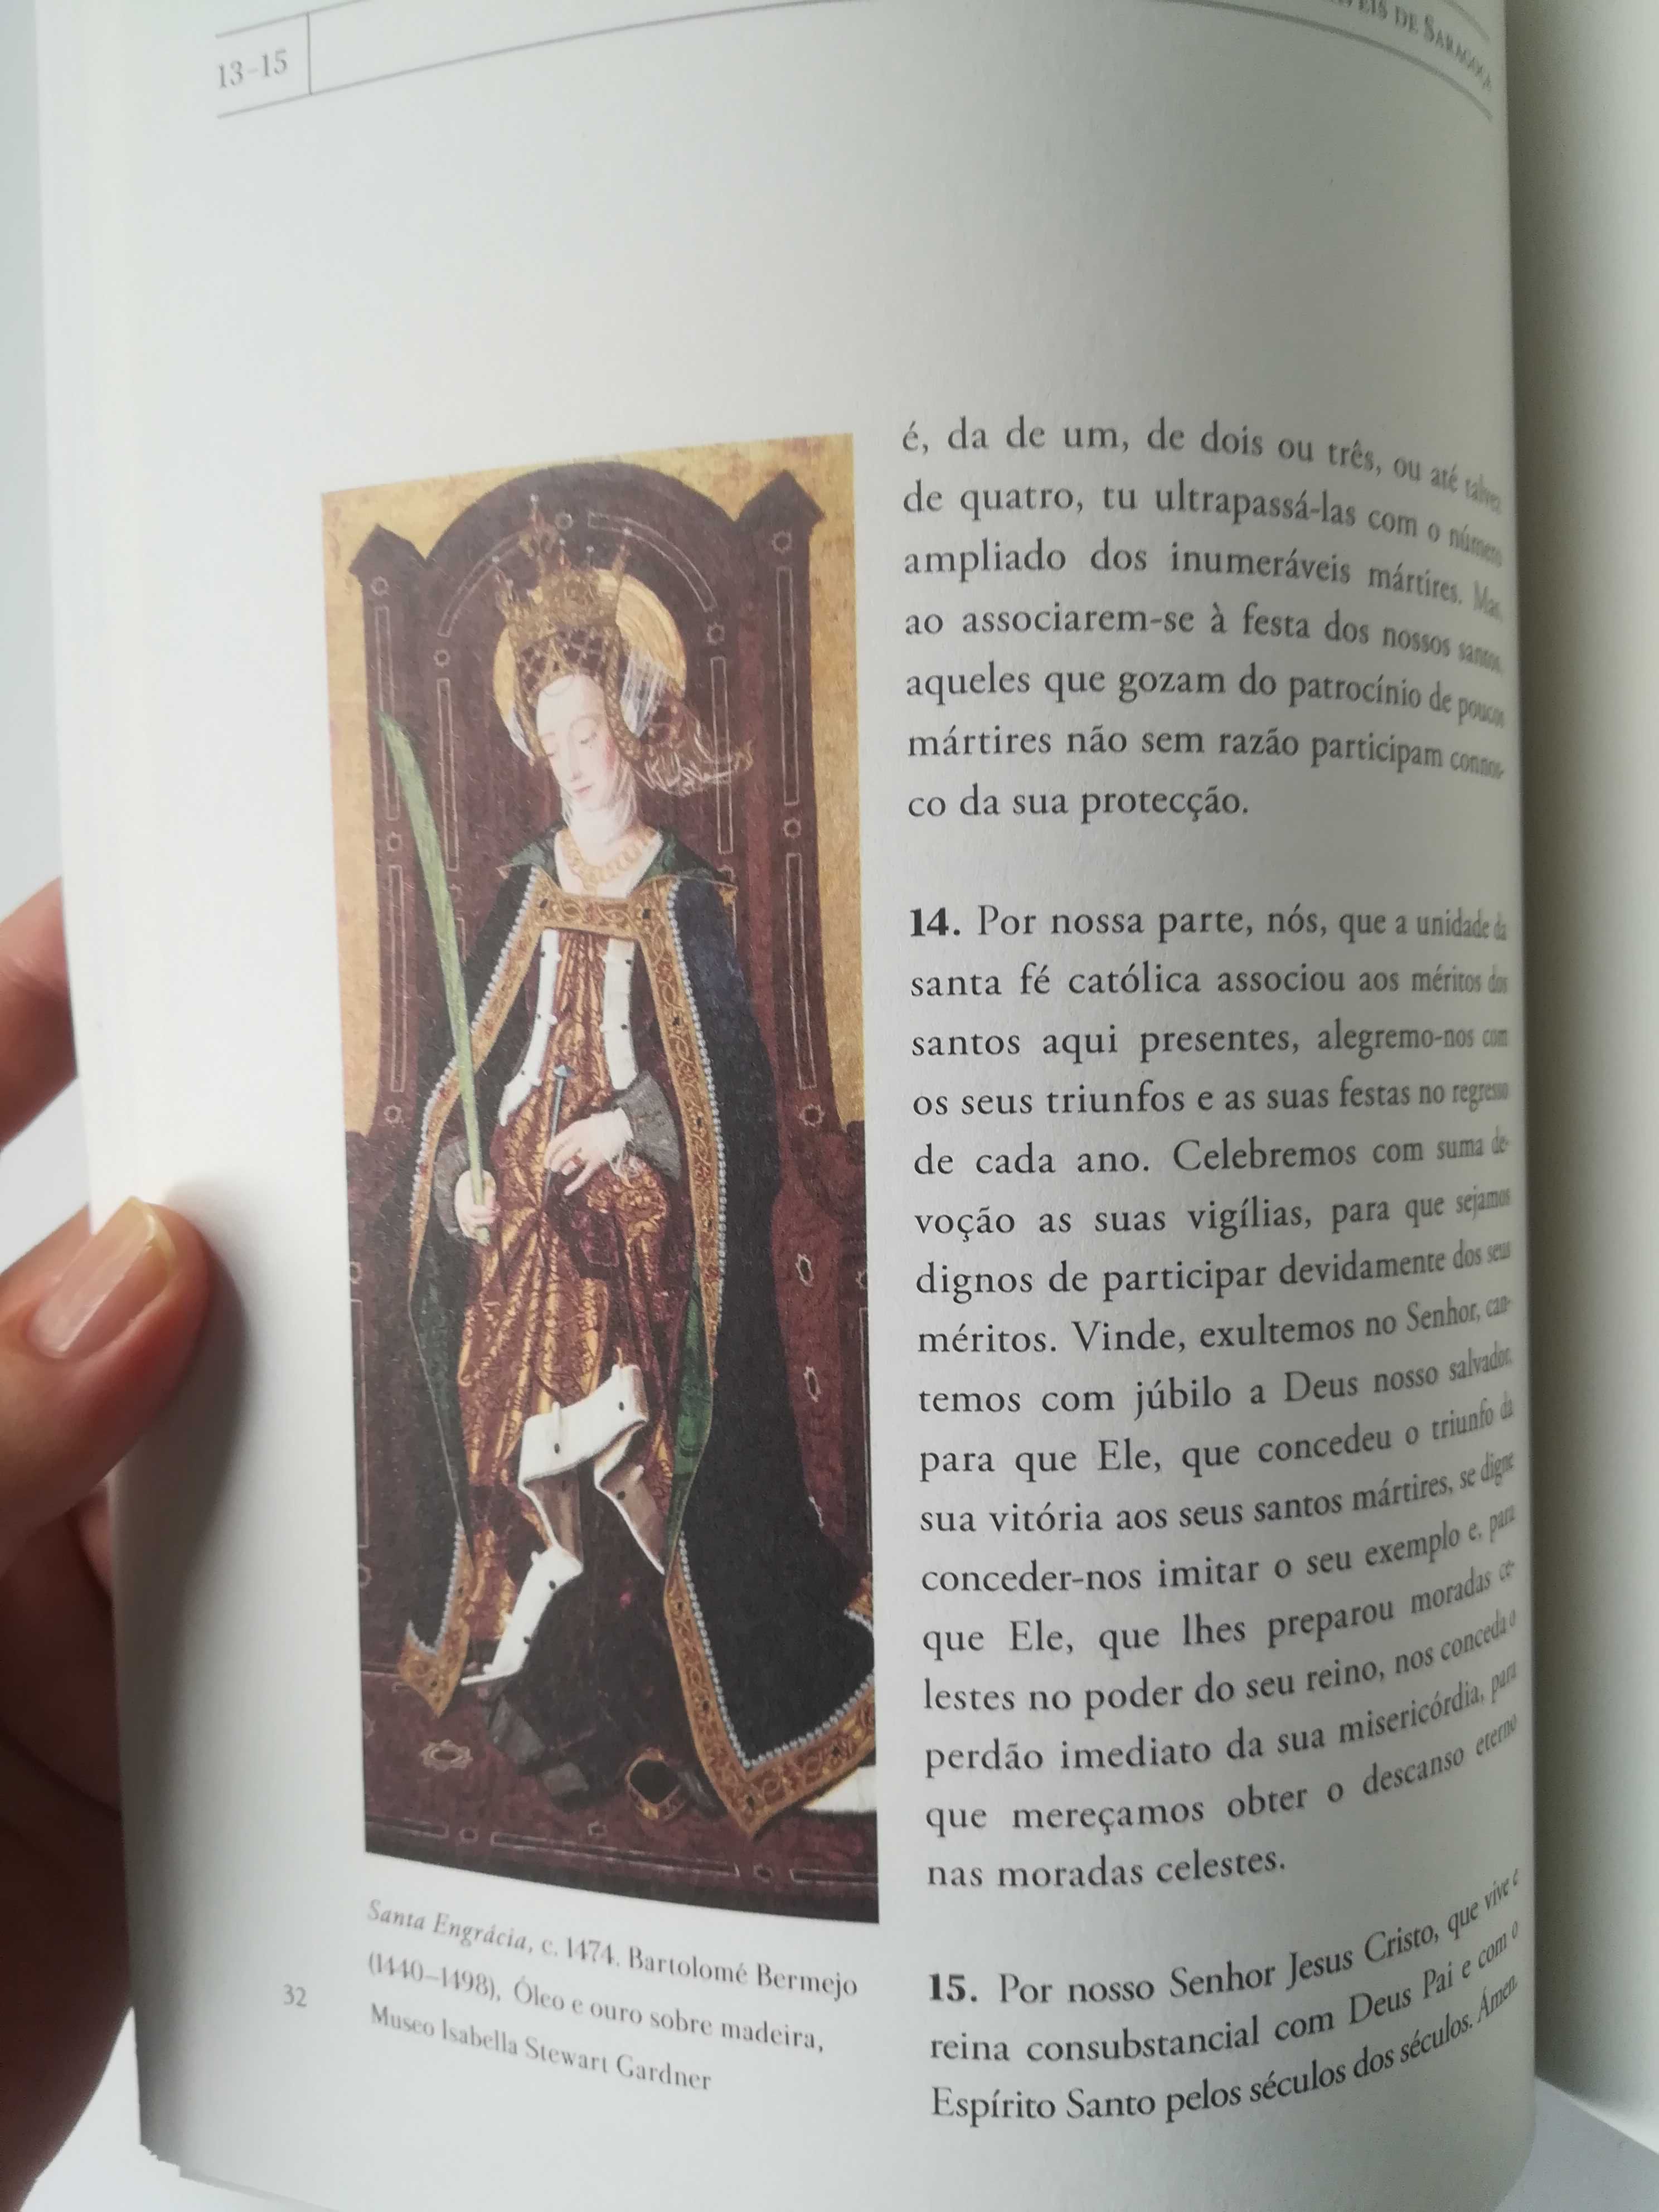 Santa Engrácia e São Félix - Santos e Milagres na Idade Média Pt vol.3